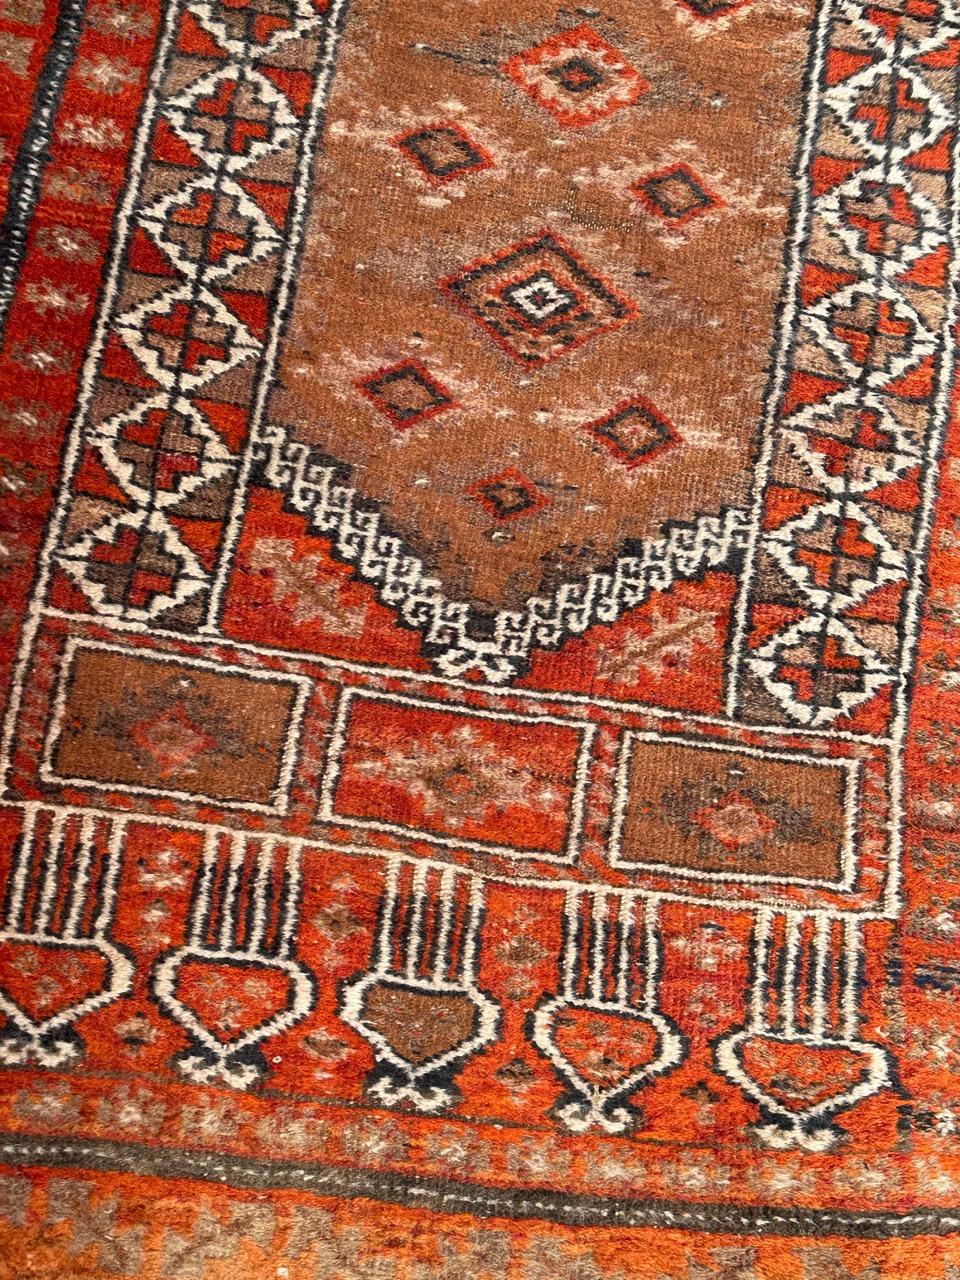 Magnifique tapis turkmène Baluch du milieu du siècle avec de jolis motifs tribaux et stylisés et de belles couleurs, avec de l'orange, du marron et du gris, entièrement noué à la main avec de la laine sur une base de laine. 

✨✨✨
